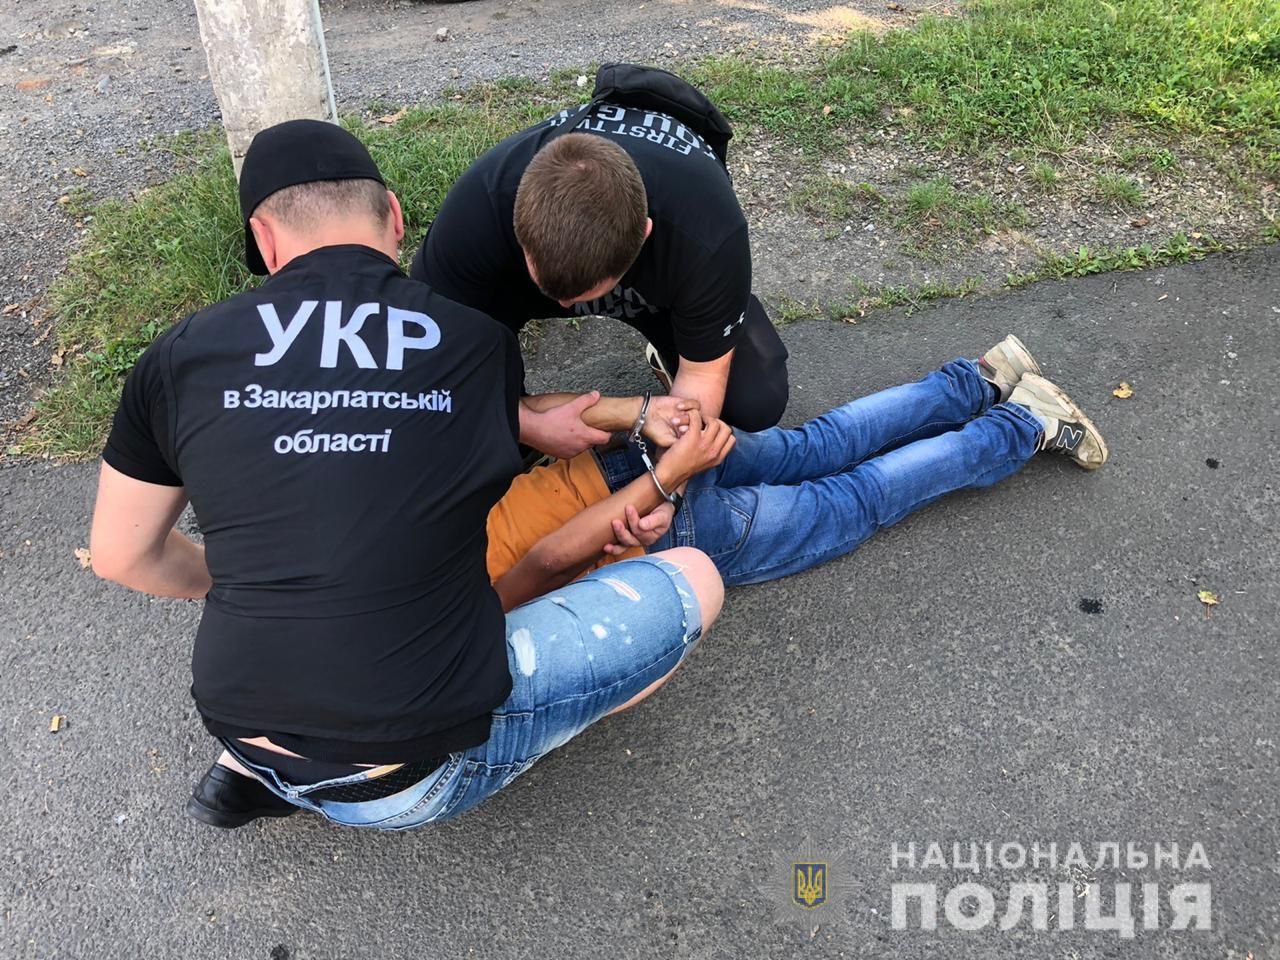 В Ужгороде вооруженный 15-летний подросток ограбил АЗС. ВИДЕО